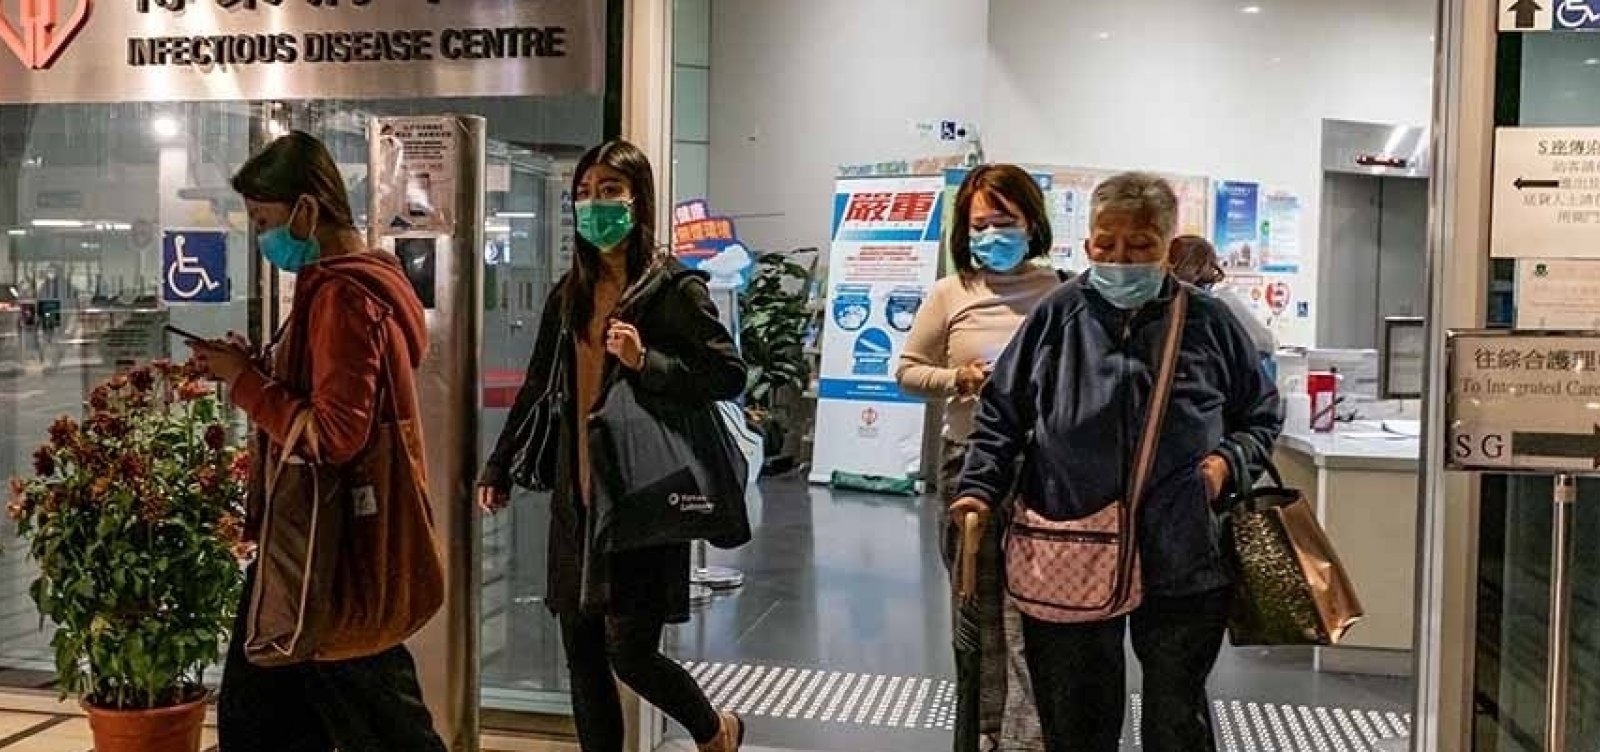 China constrói hospital de mil leitos como parte do esforço do país contra o novo coronavírus